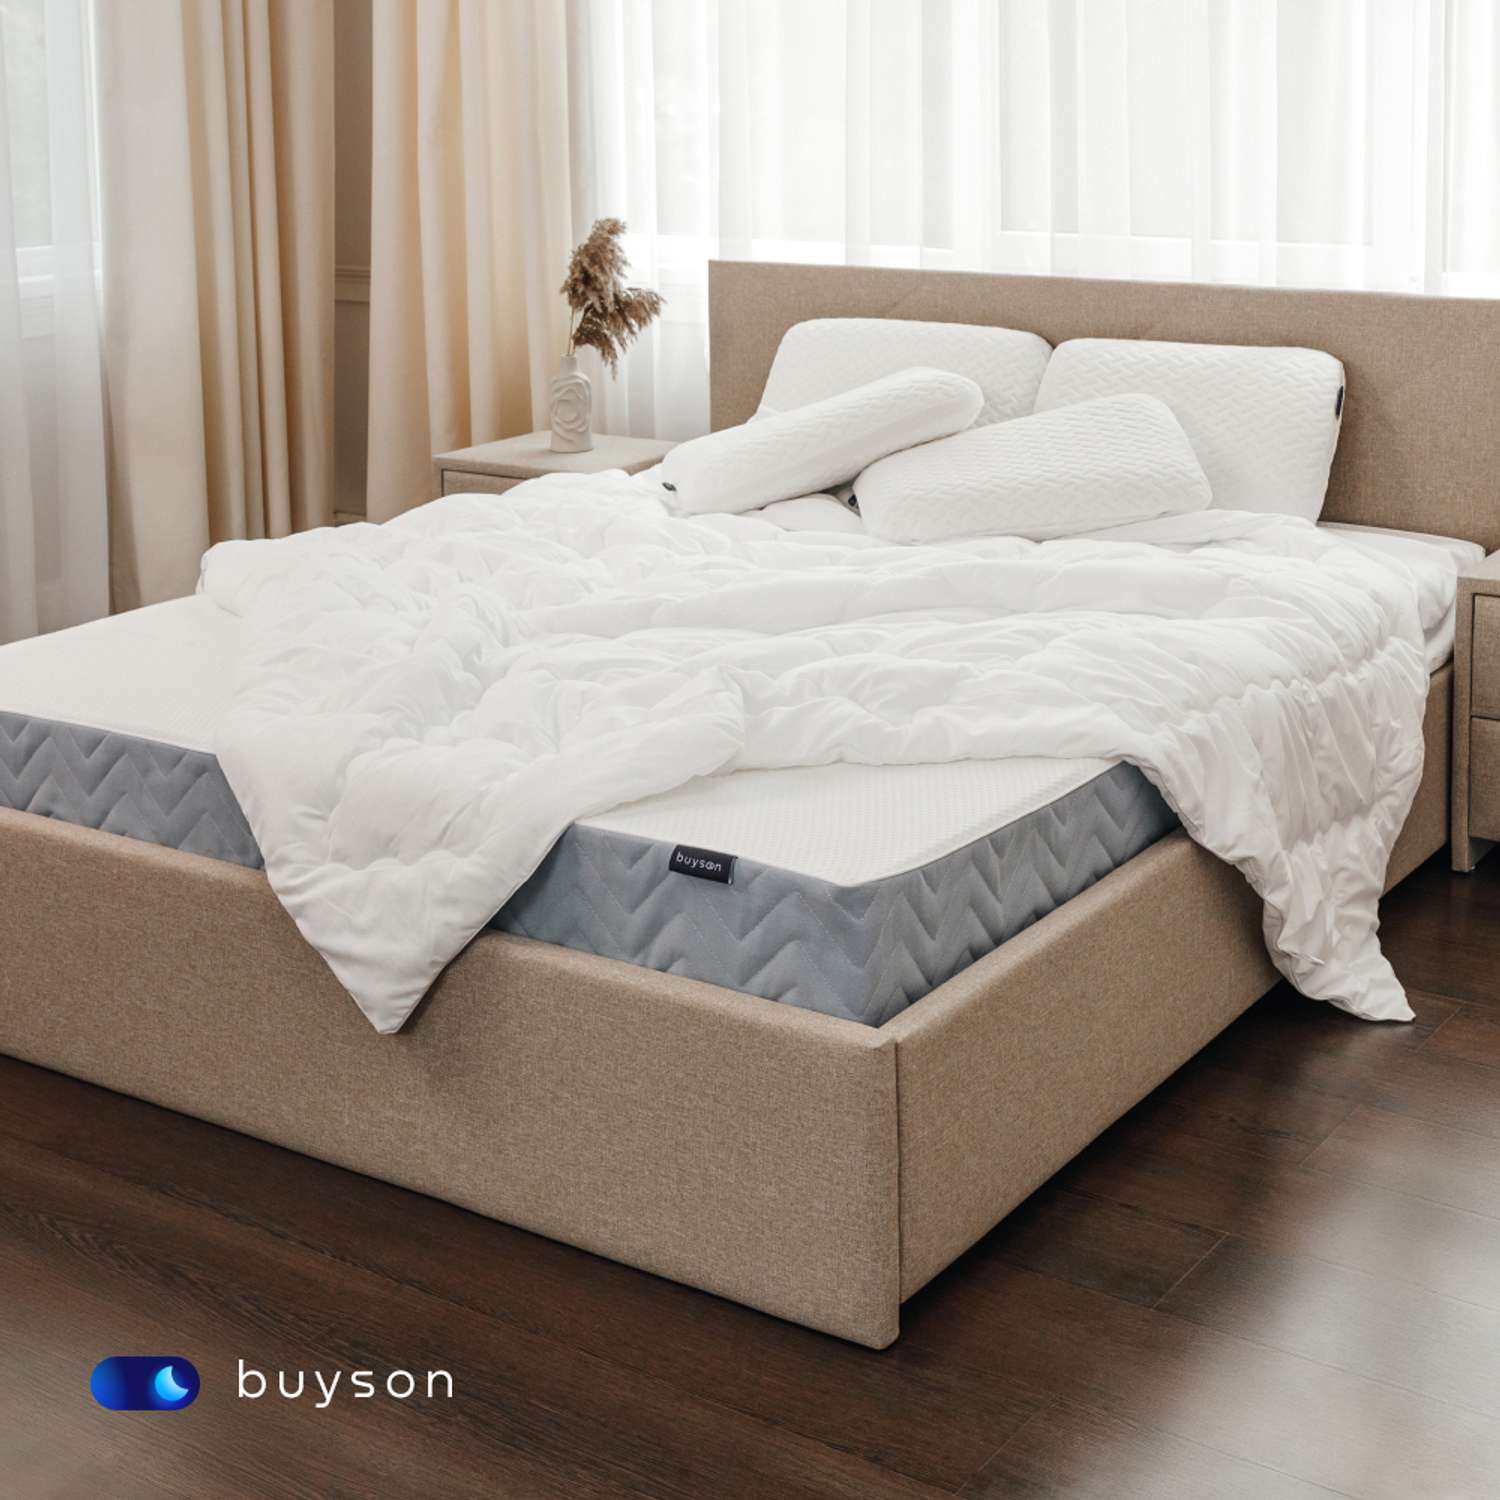 Одеяло buyson BuyRest 200х220 см евро 2-х спальное всесезонное с наполнителем полиэфир - фото 7